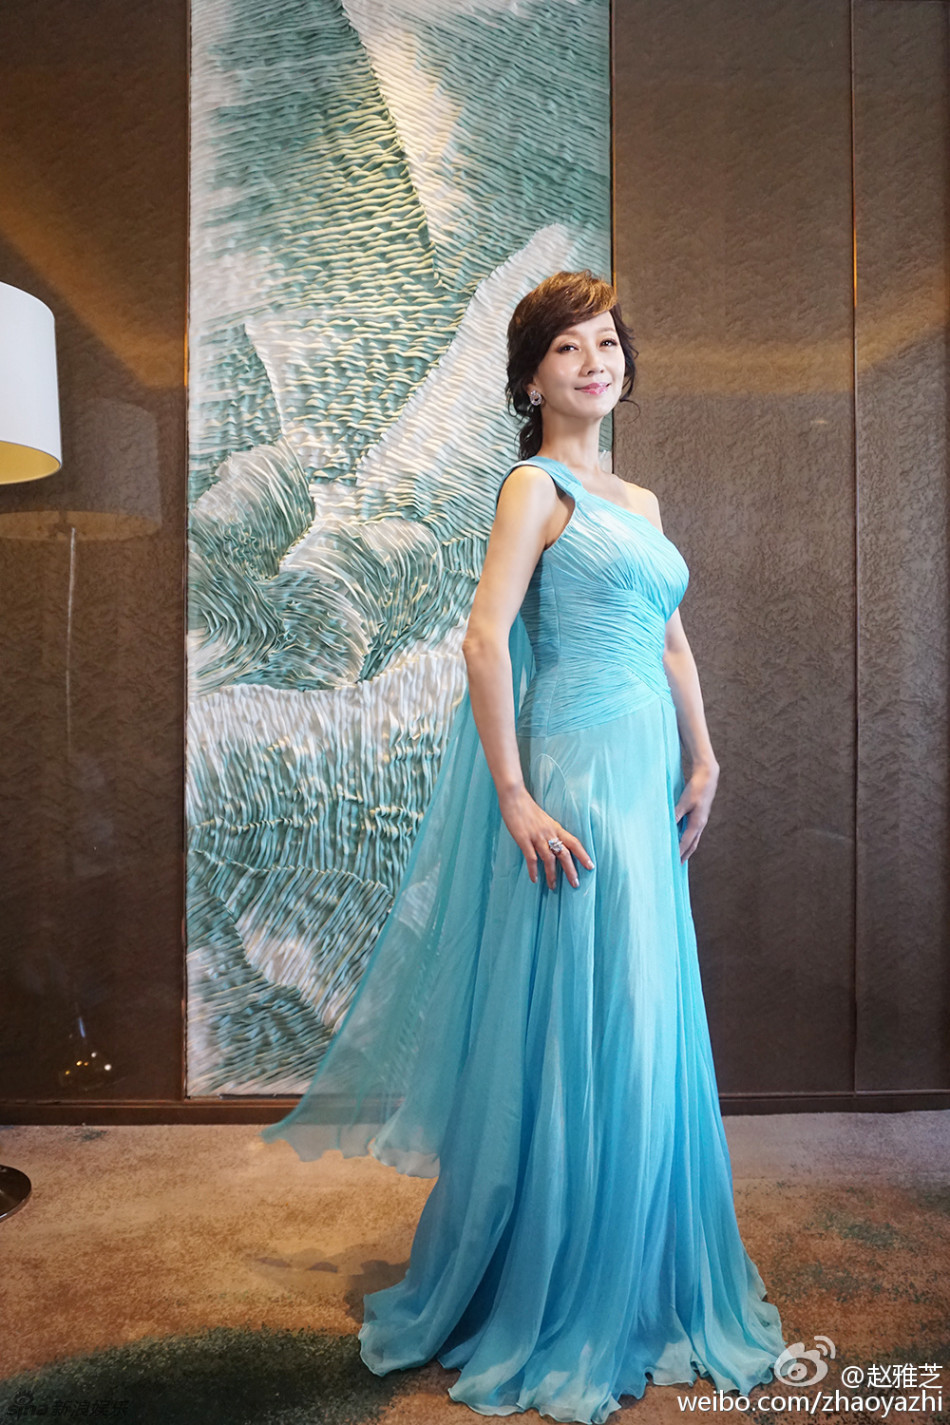 61岁赵雅芝穿蓝裙美艳 似"冰雪"艾莎公主